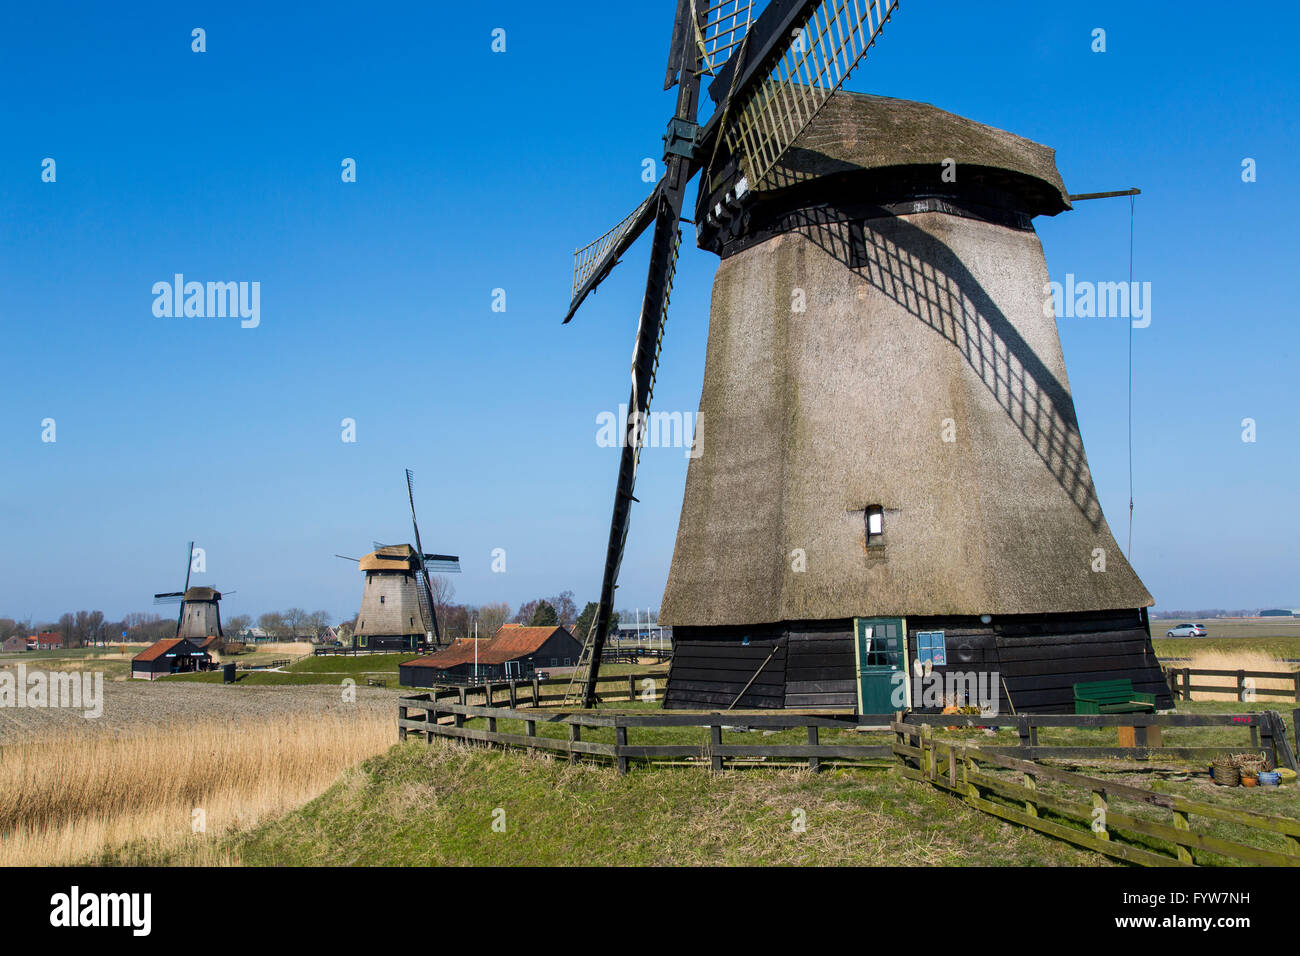 Schermer Mühlengebäude, ehemals 52 Windmühlen den Polder Schermer, heute die restlichen 11 Mühlen Teil eines Museums zu entleeren, Stockfoto